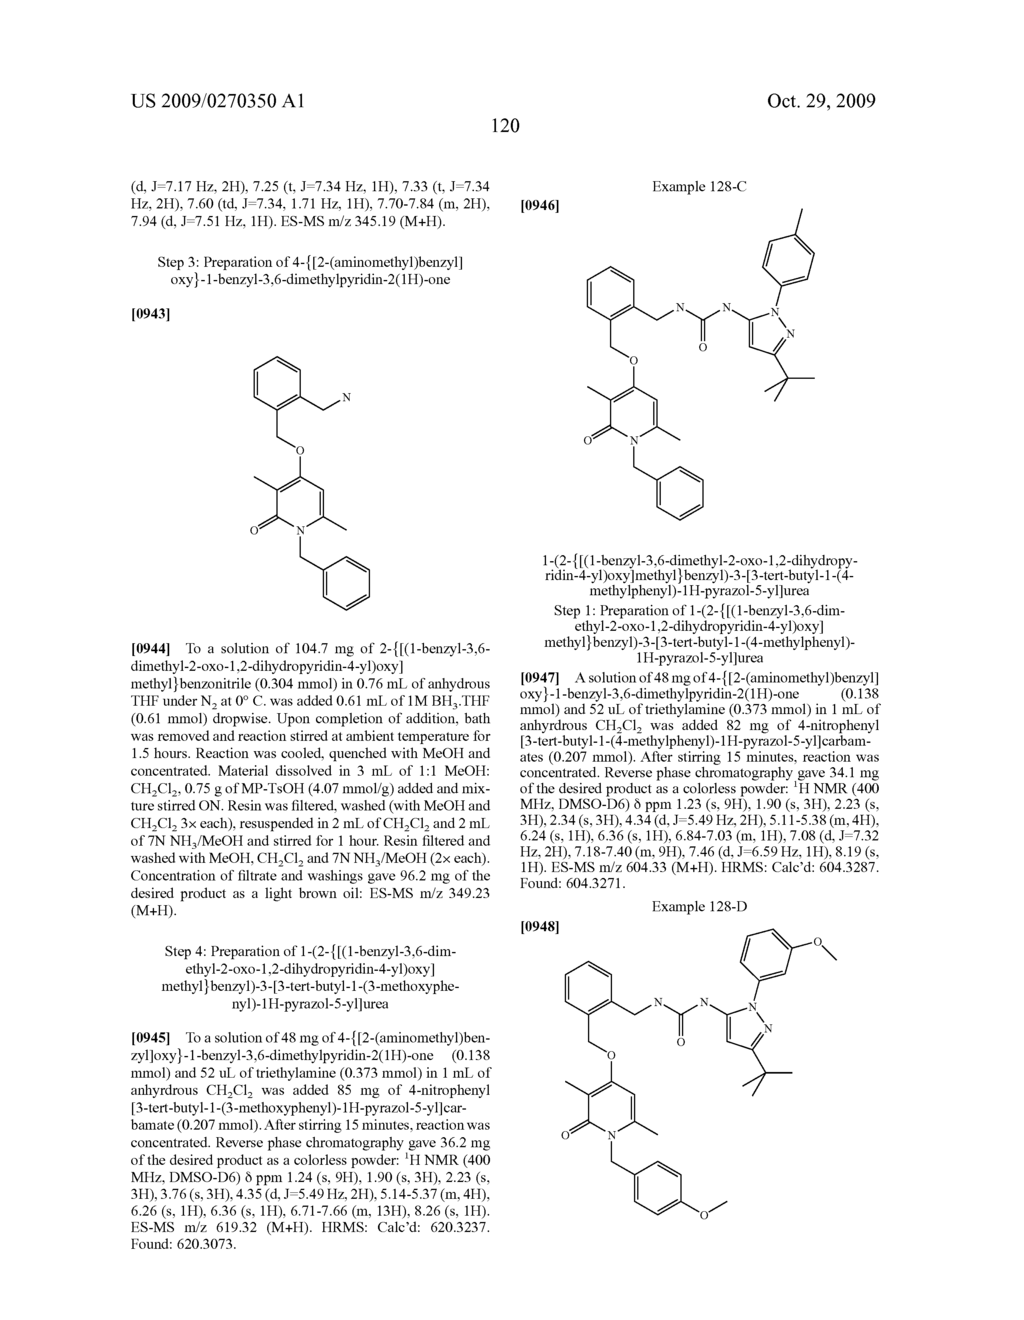 Pyridinone Pyrazole Urea and Pyrimidinone Pyrazole Urea Derivatives - diagram, schematic, and image 121